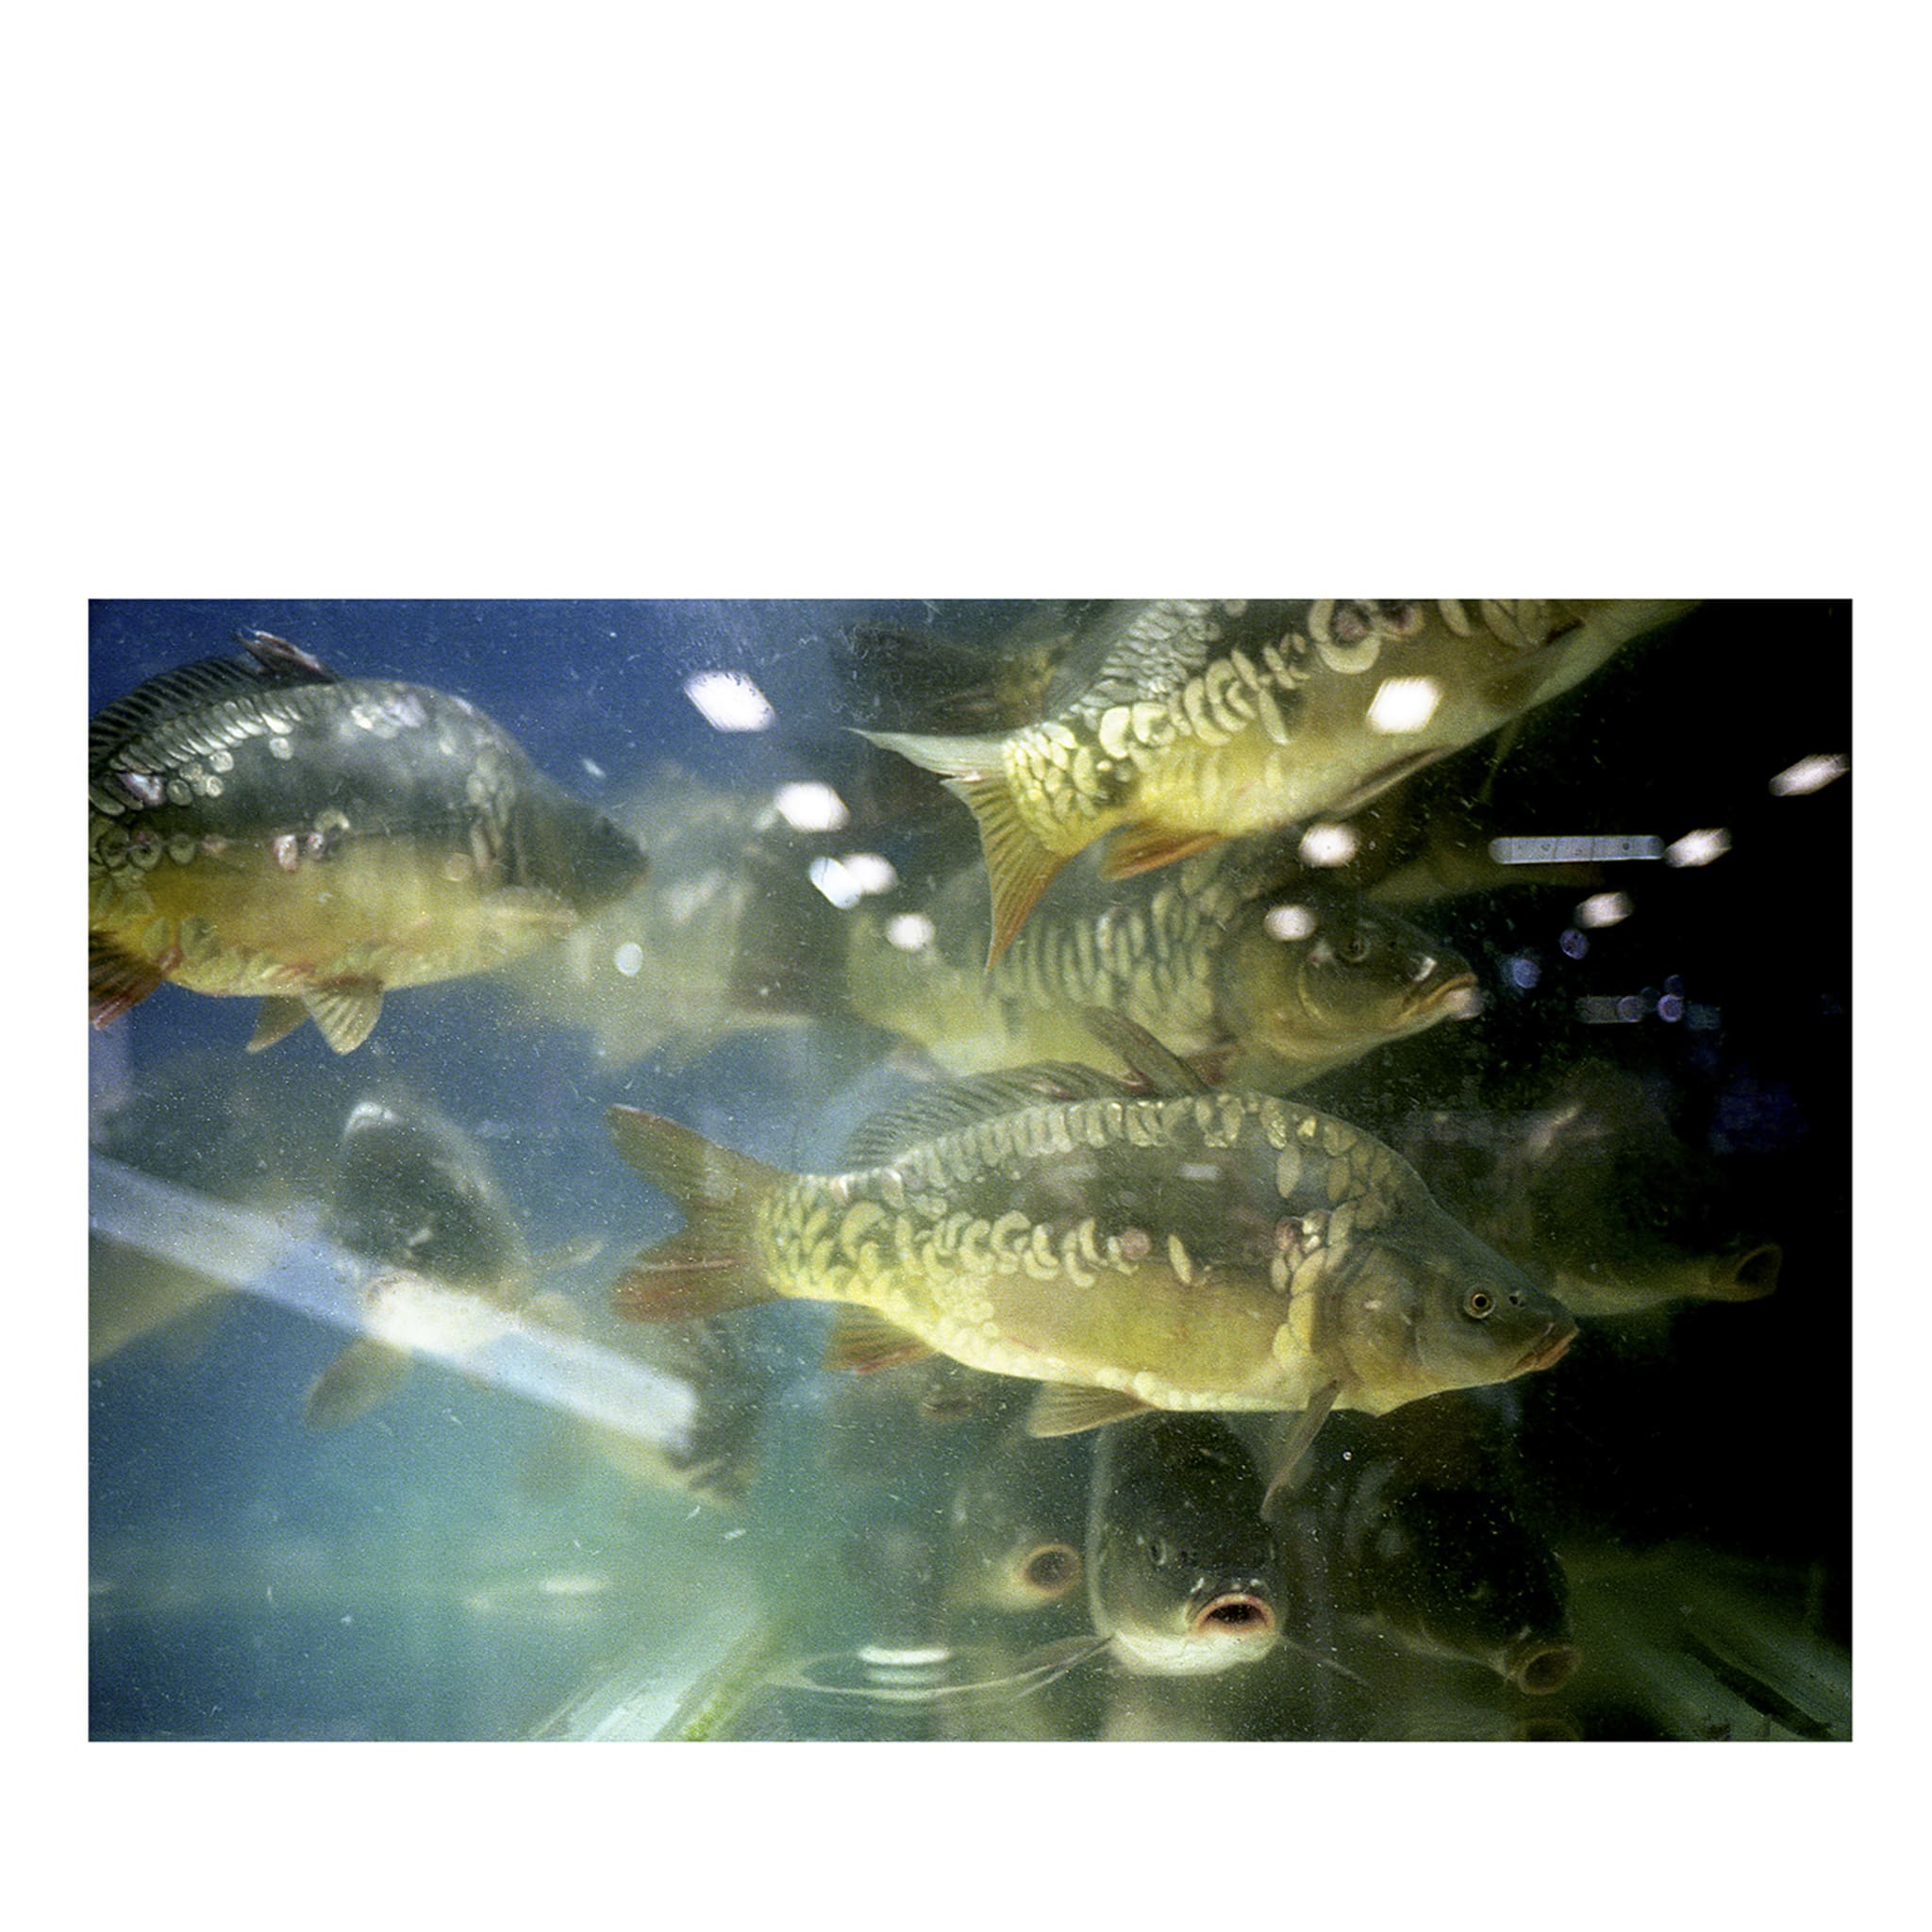 Dimensioni del pesce Stampa fotografica - Vista principale